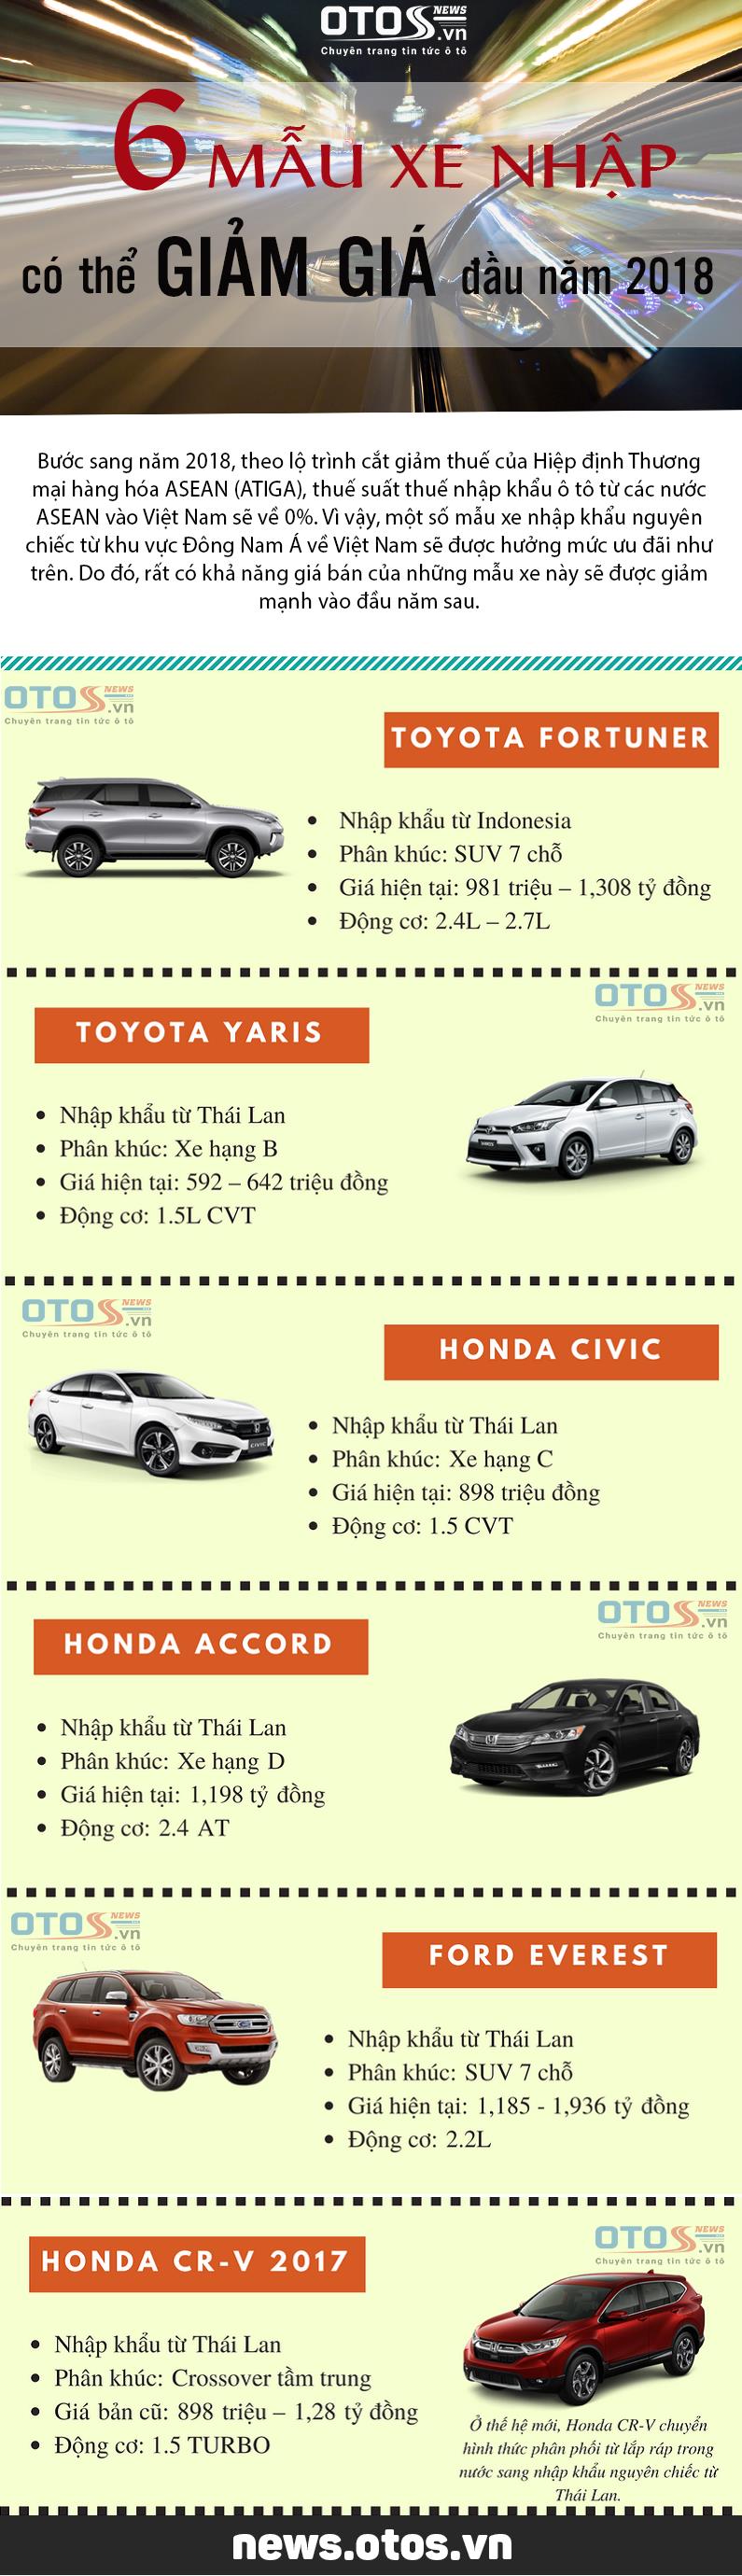 [Infographic] 6 mẫu xe nhập có thể giảm giá mạnh đầu năm 2018